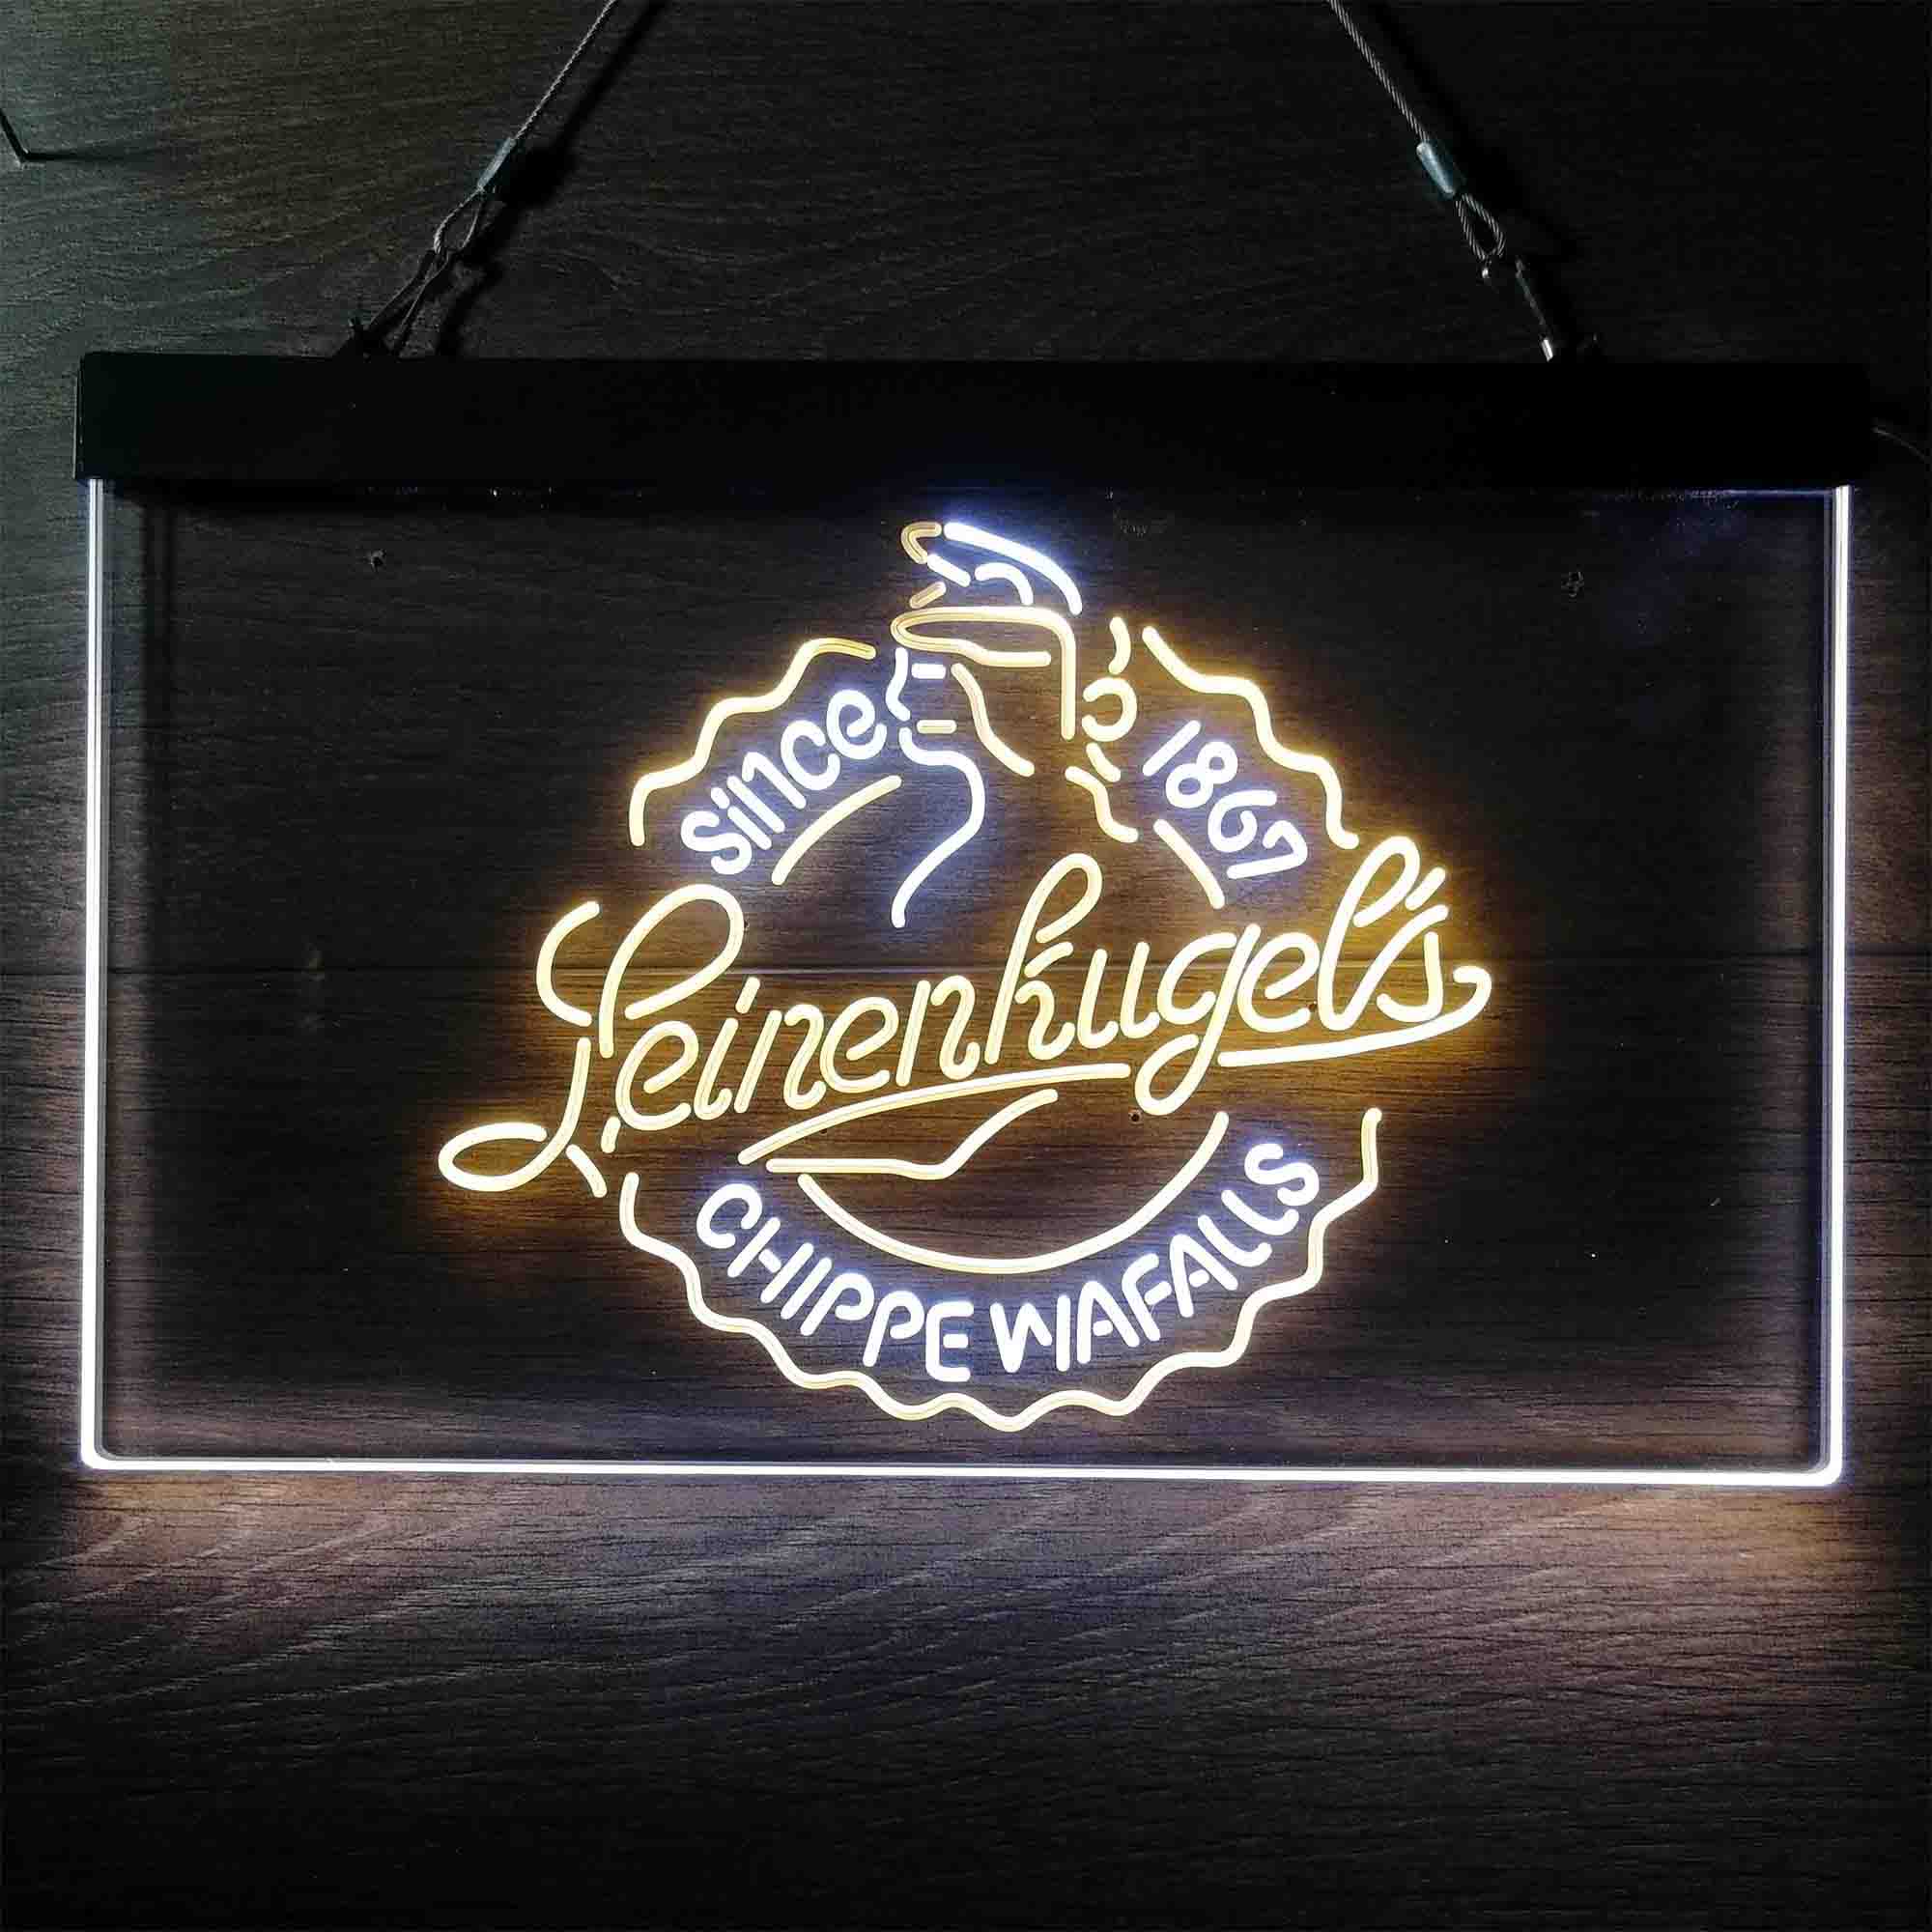 Leinenkugel Brewery Chippewa Falls Since 1867 Neon LED Sign